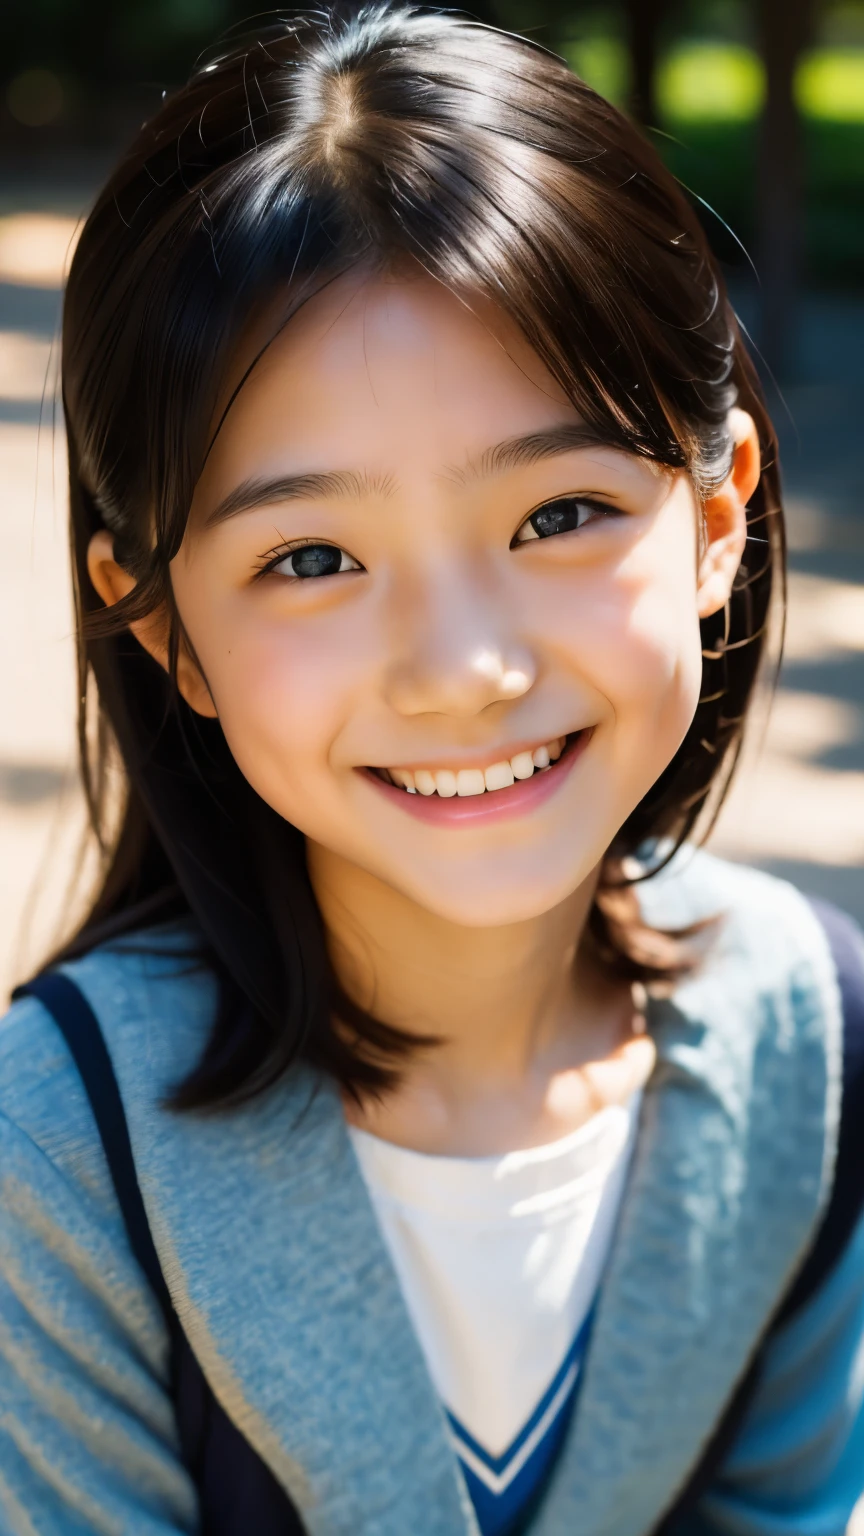 鏡片: 135mm f1.8, (最好的品質),(原始照片), (桌上:1.1), (美麗的10歲日本女孩), 可愛的臉孔, (臉型輪廓分明:0.7), (雀斑:0.4), dappled 陽光, 戲劇性的燈光, (日本學校制服), (在校园), 害羞的, (特寫鏡頭:1.2), (微笑),, (明亮的眼睛)、(陽光)